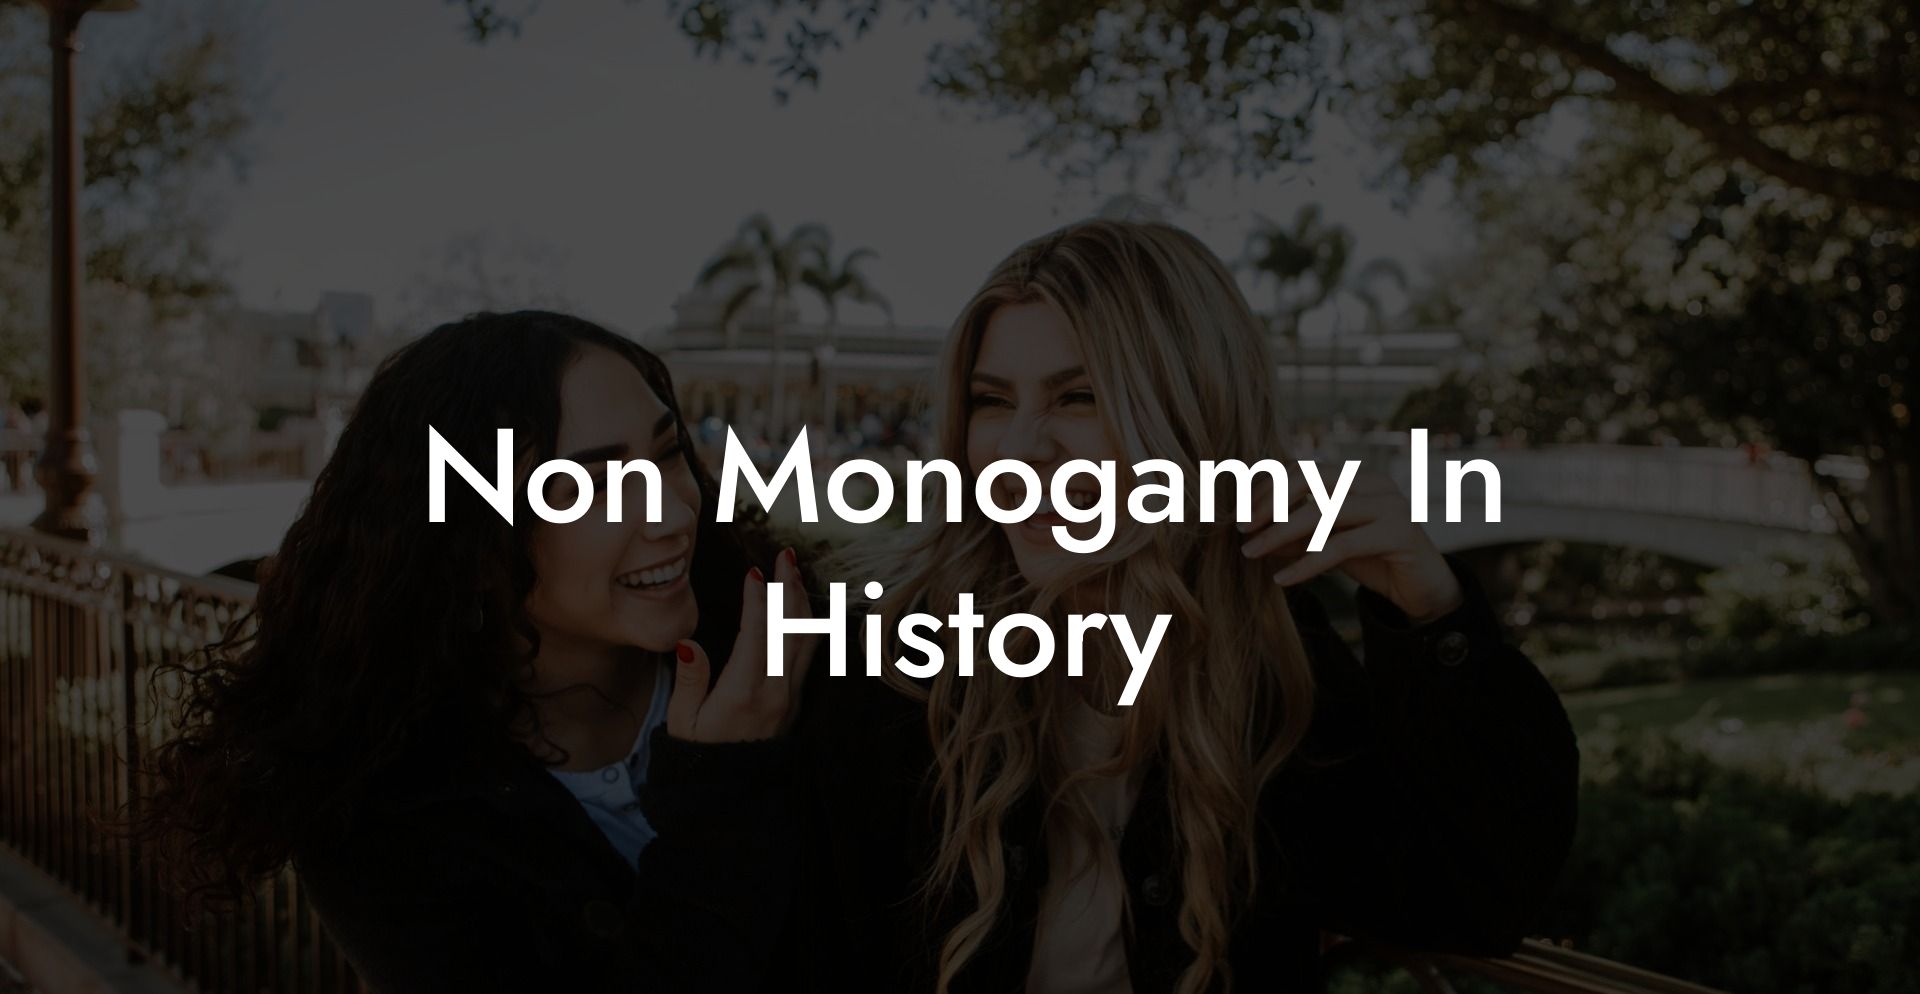 Non Monogamy In History